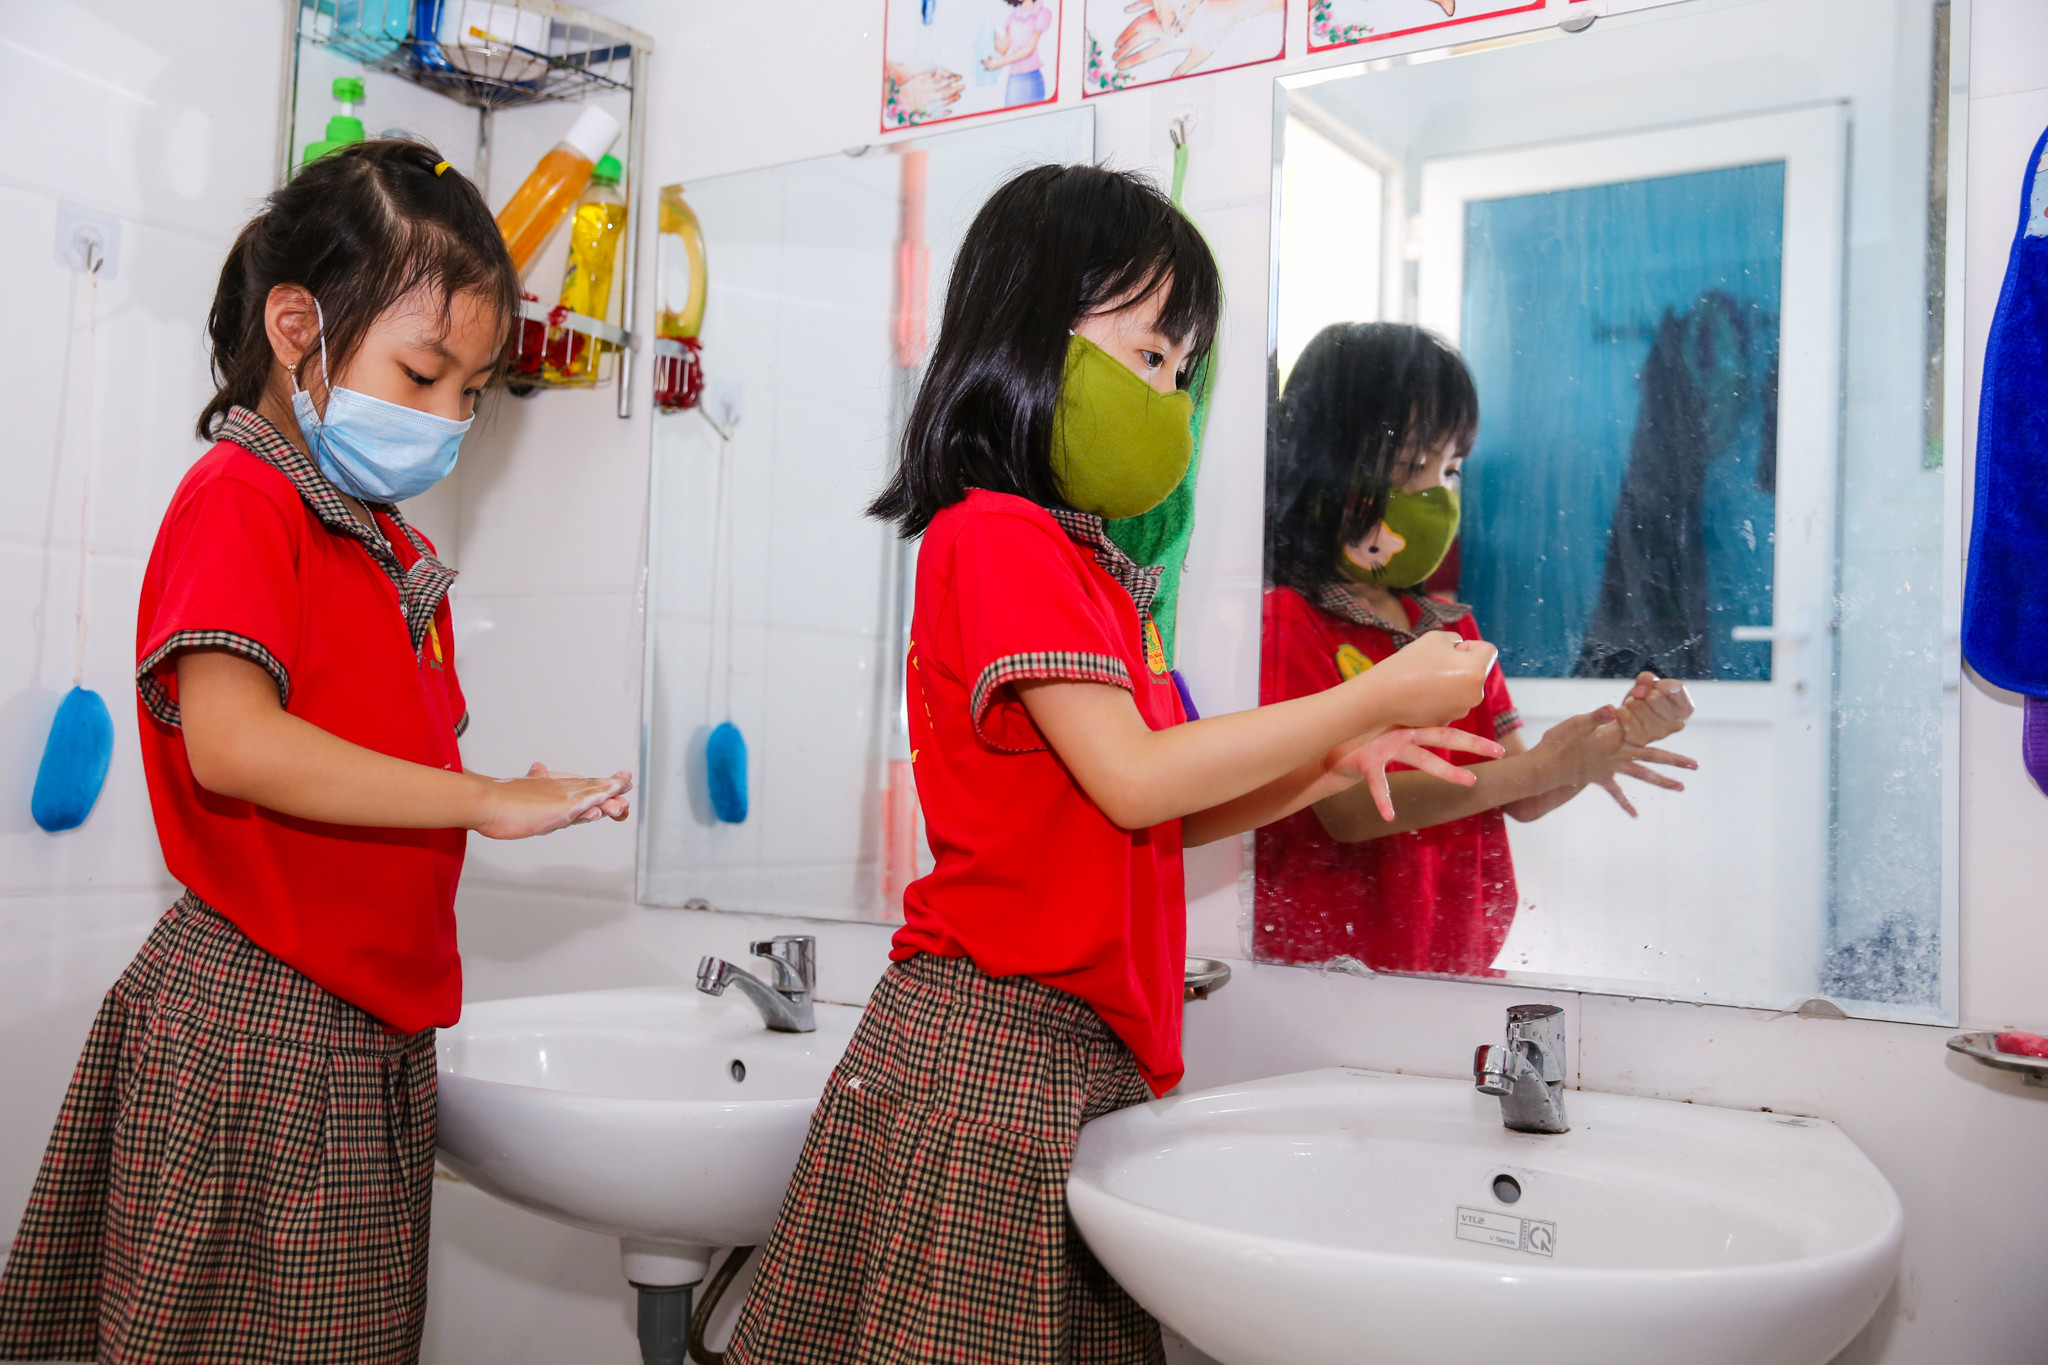 Trước giờ ăn để đảm bảo vệ sinh phòng chống dịch covid-19 các bé được hướng dẫn rửa tay sạch sẽ. Ảnh: Đức Anh